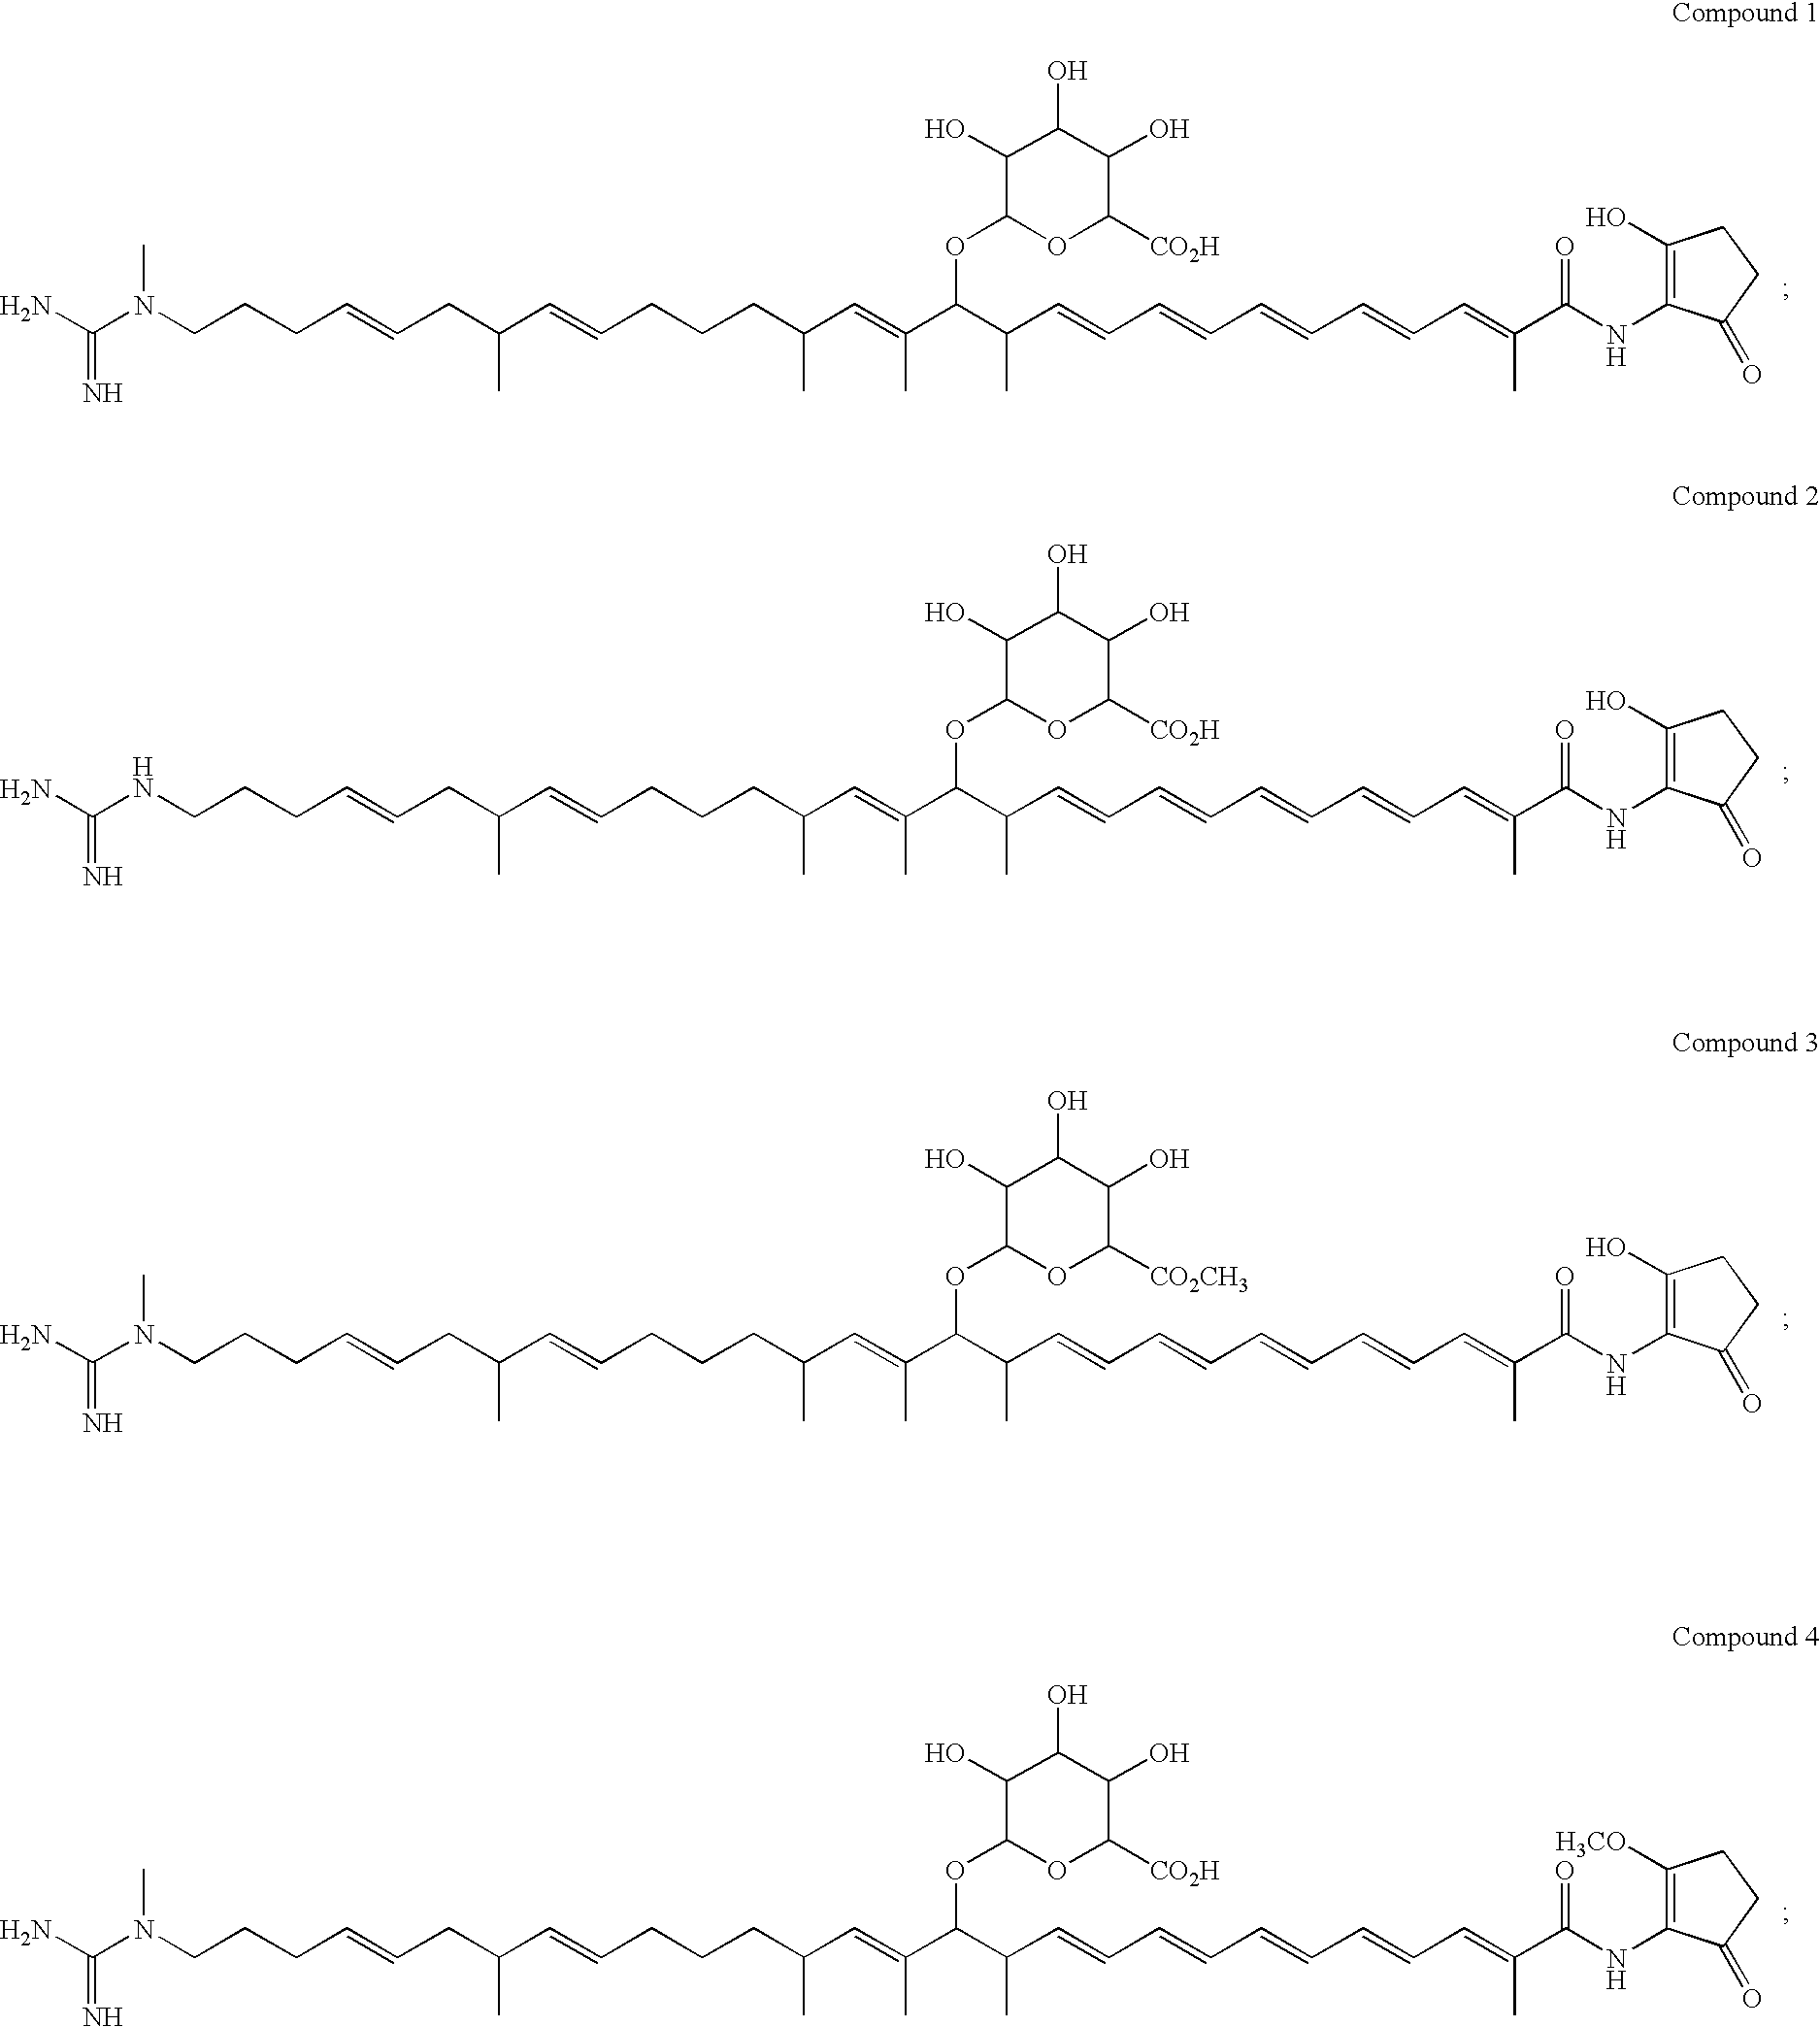 Polyene polyketides and methods of production